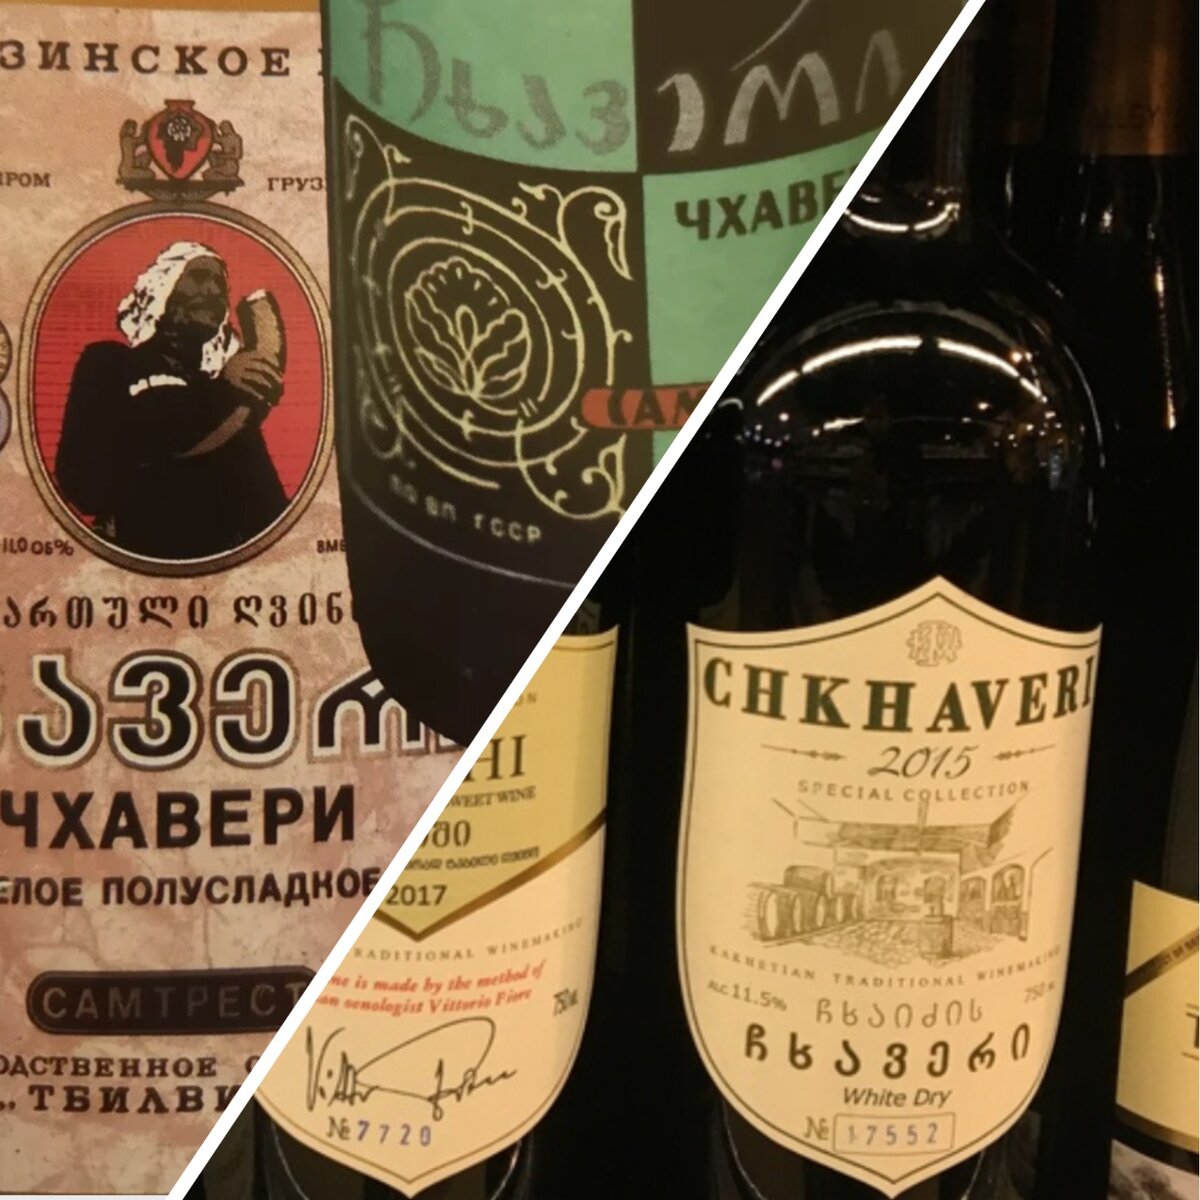 Грузинское вино в СССР и сейчас. Как оно изменилось?